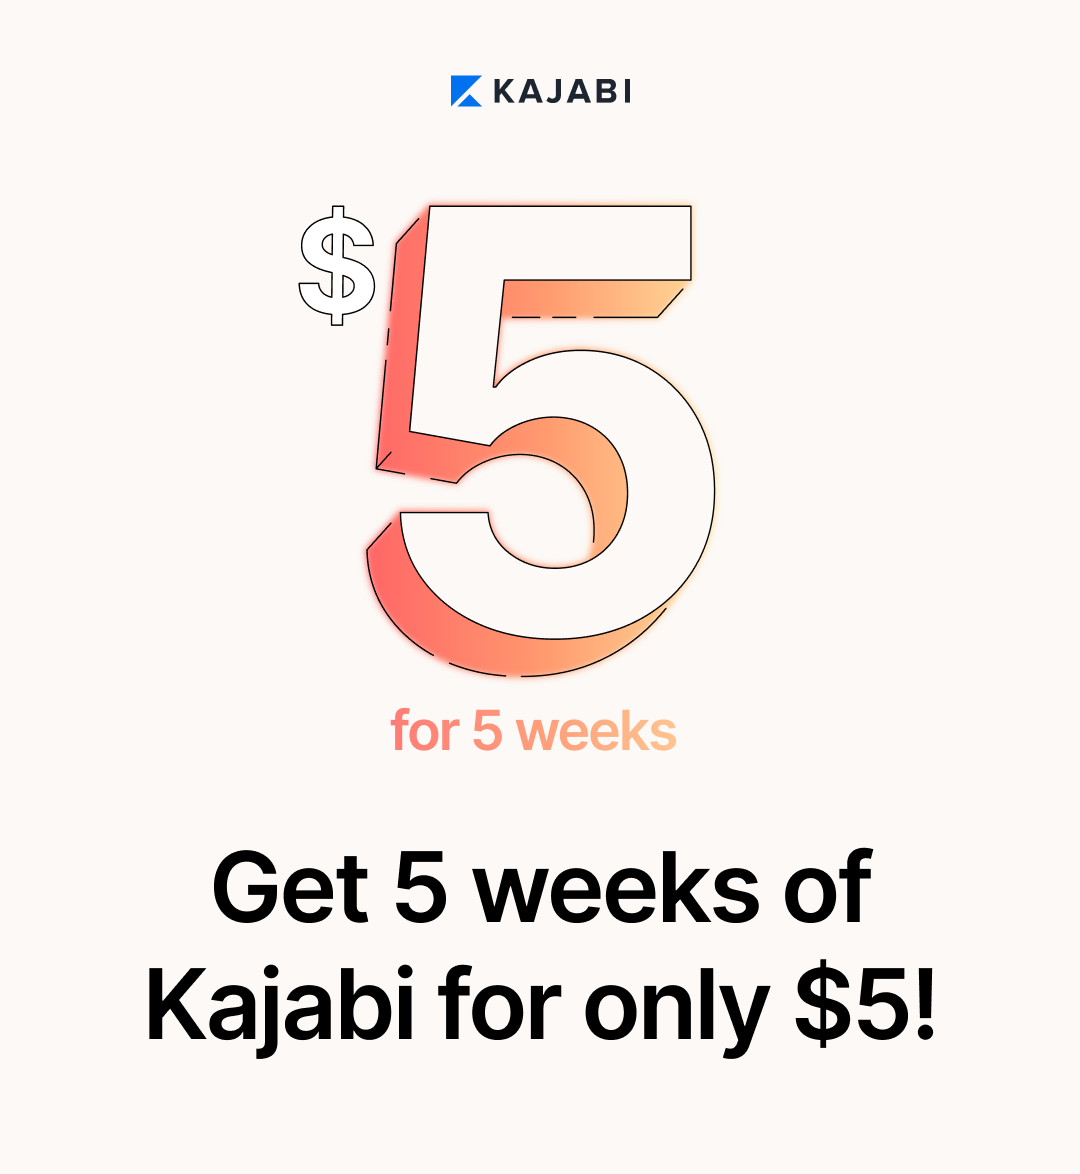 A big 5, get 5 weeks of Kajabi for only 5 dollars